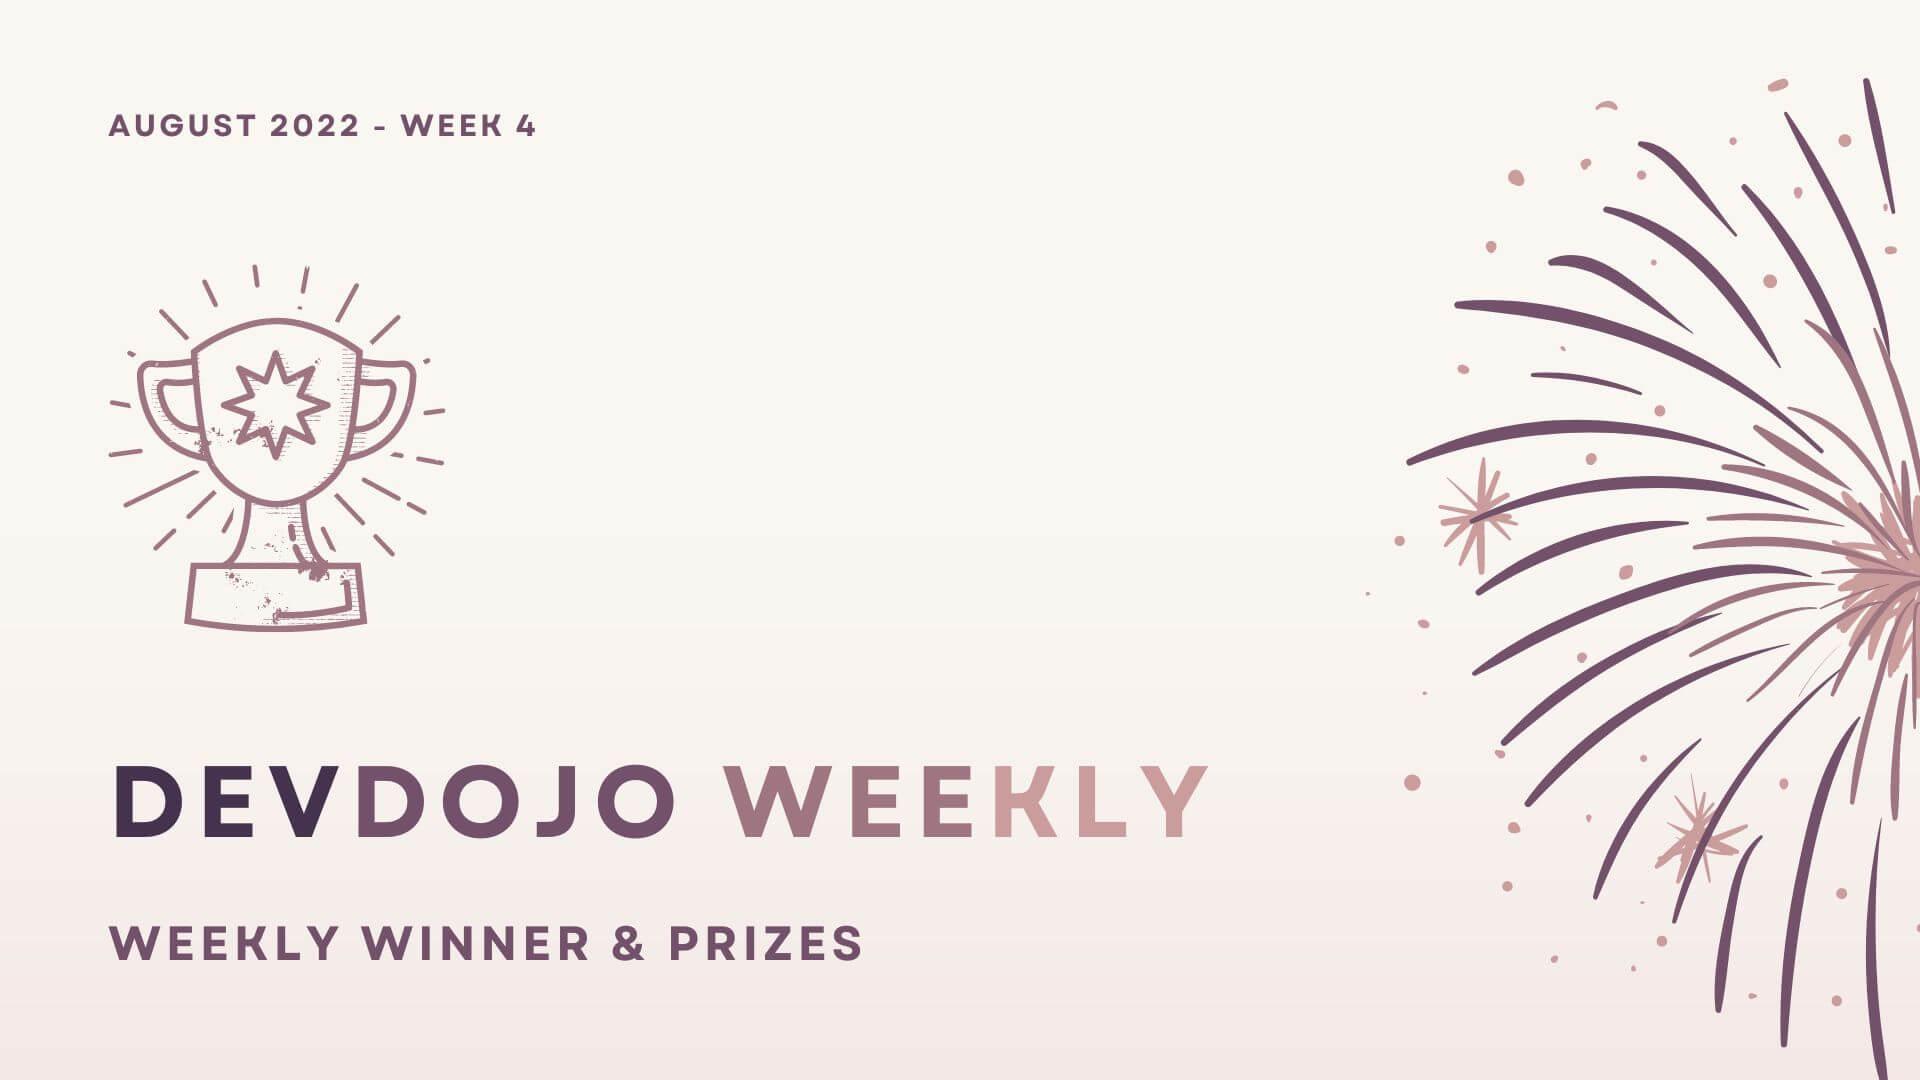 DevDojo Weekly - August 2022 - Week 4